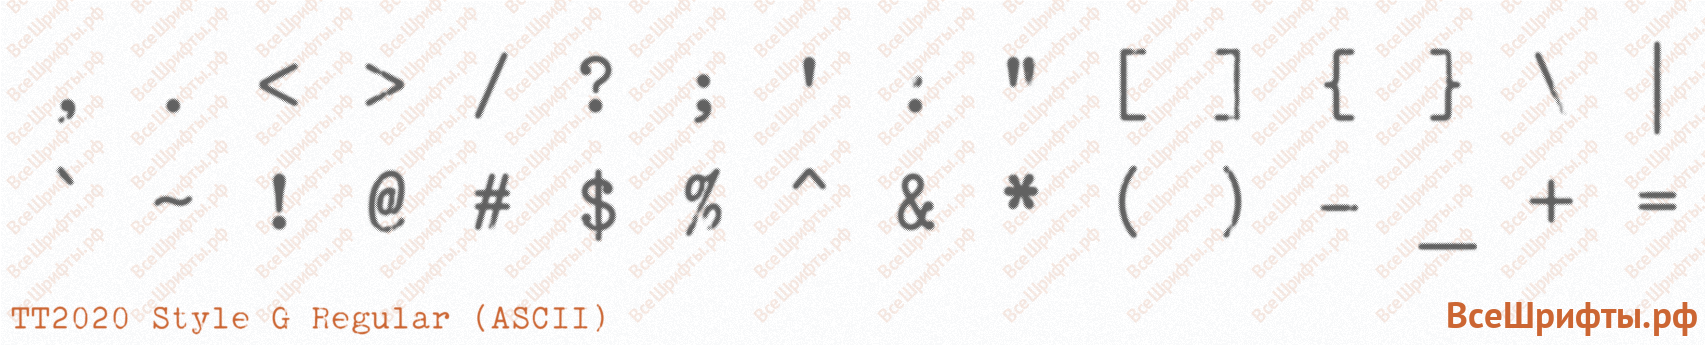 Шрифт TT2020 Style G Regular (ASCII) со знаками препинания и пунктуации